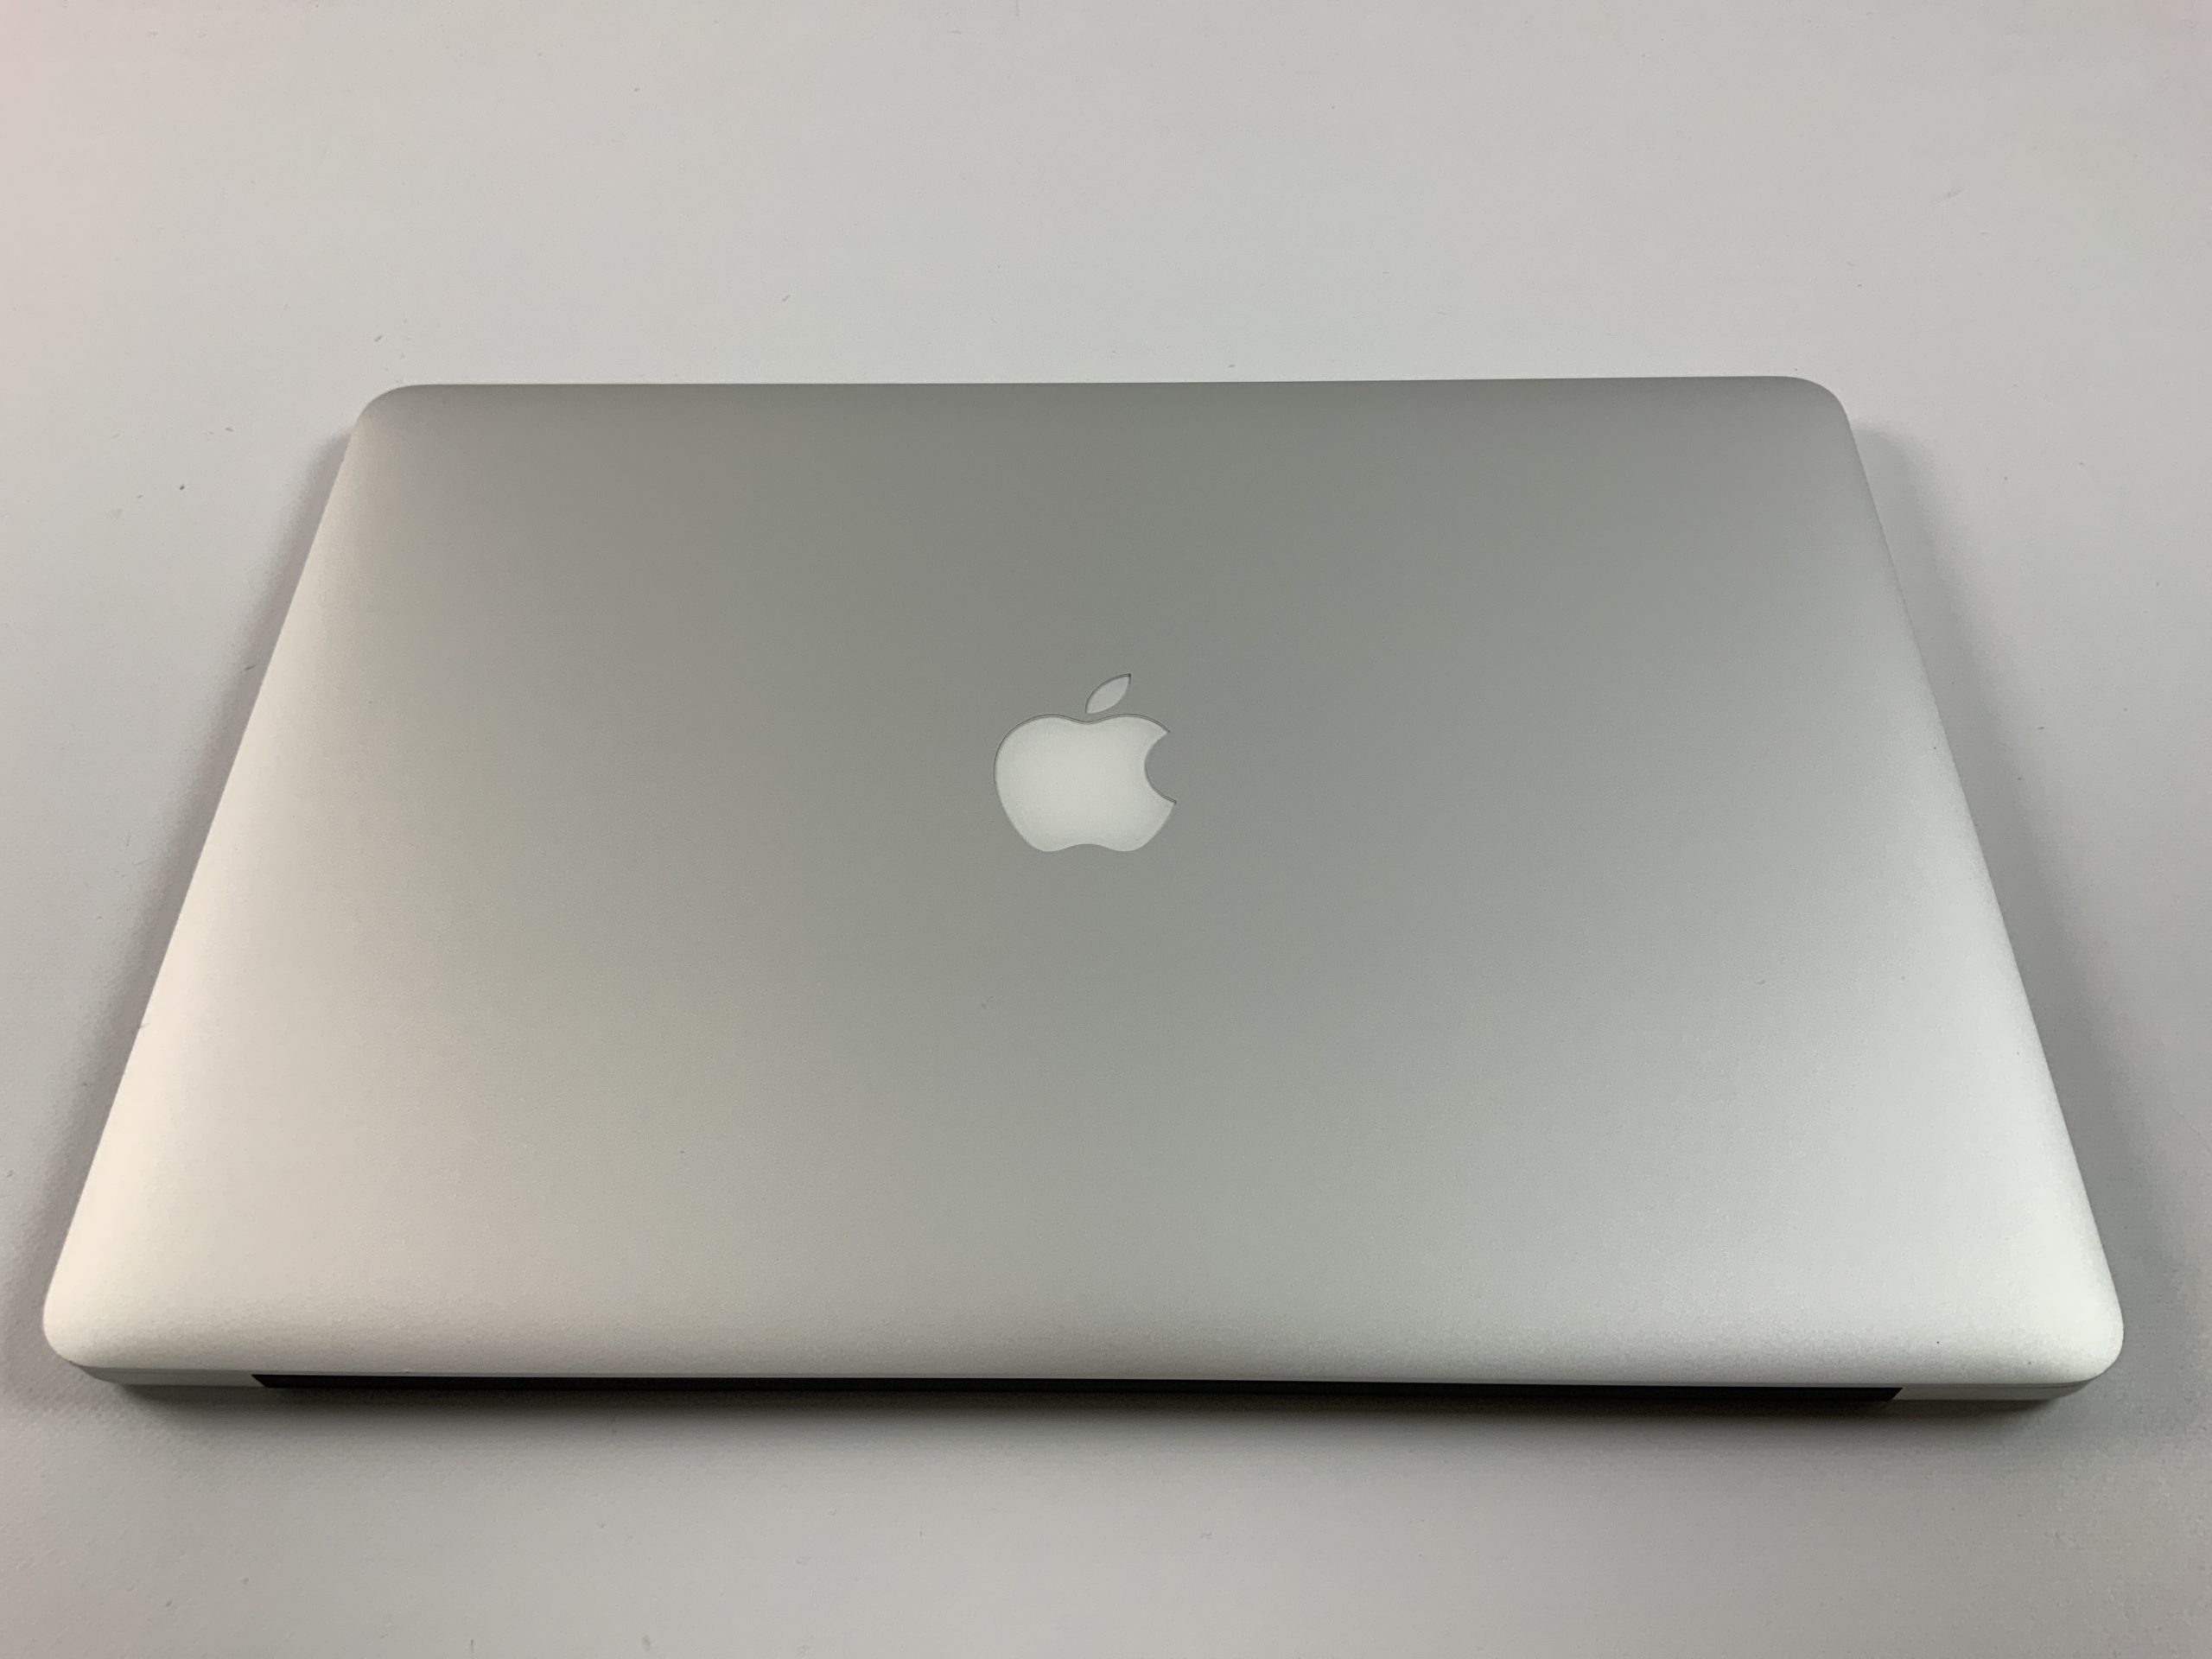 MacBook Pro Retina 15" Mid 2014 (Intel Quad-Core i7 2.5 GHz 16 GB RAM 512 GB SSD), Intel Quad-Core i7 2.5 GHz, 16 GB RAM, 512 GB SSD, Bild 2